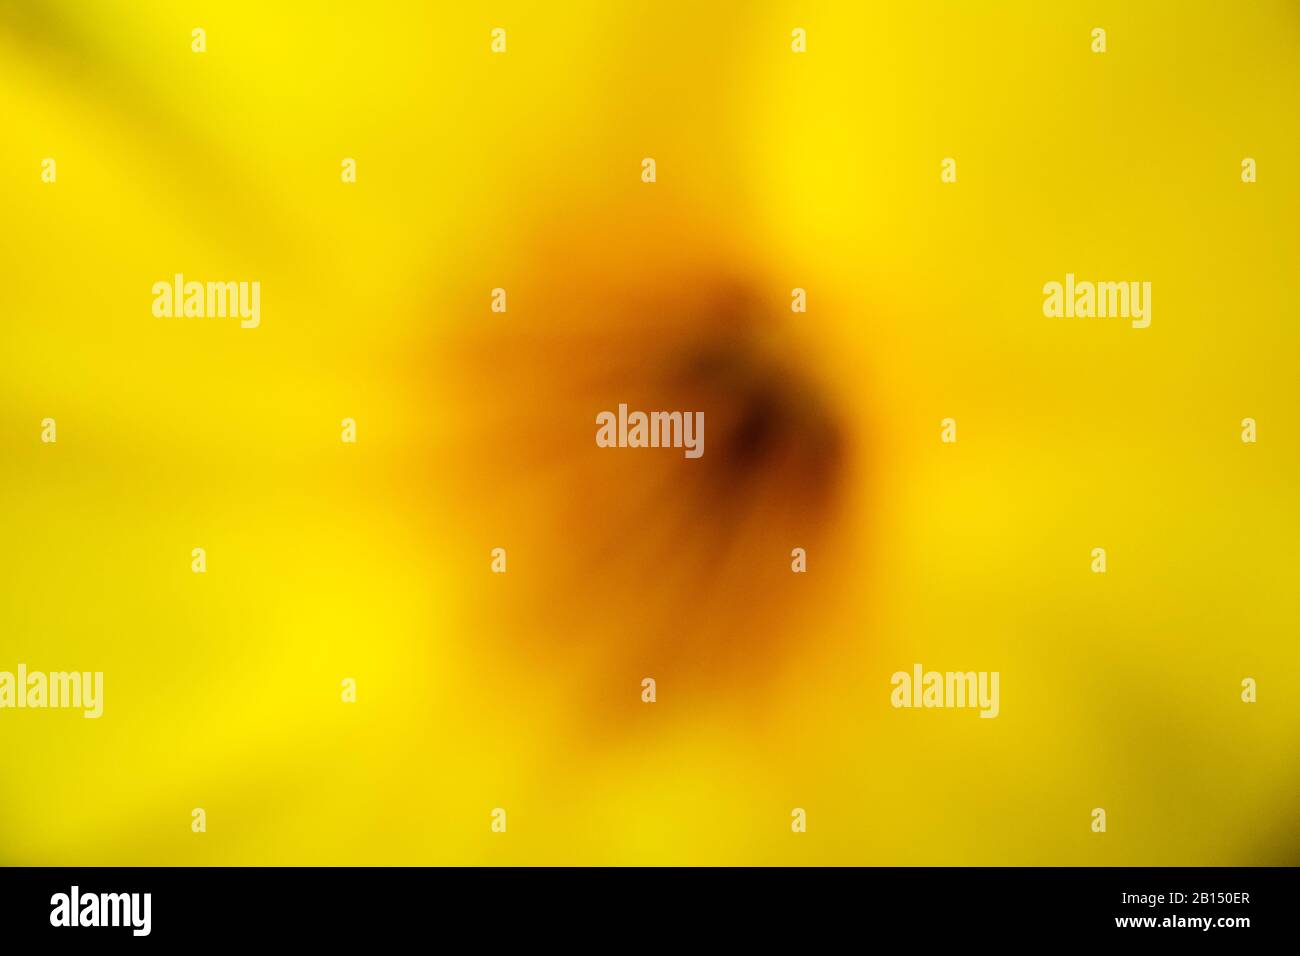 Abstrakter Hintergrund : sommerliche Farbtöne verträumt schöne gelbe Blumenfarbe Farbabstufung mit Pollen verschwommener Hintergrund Stockfoto